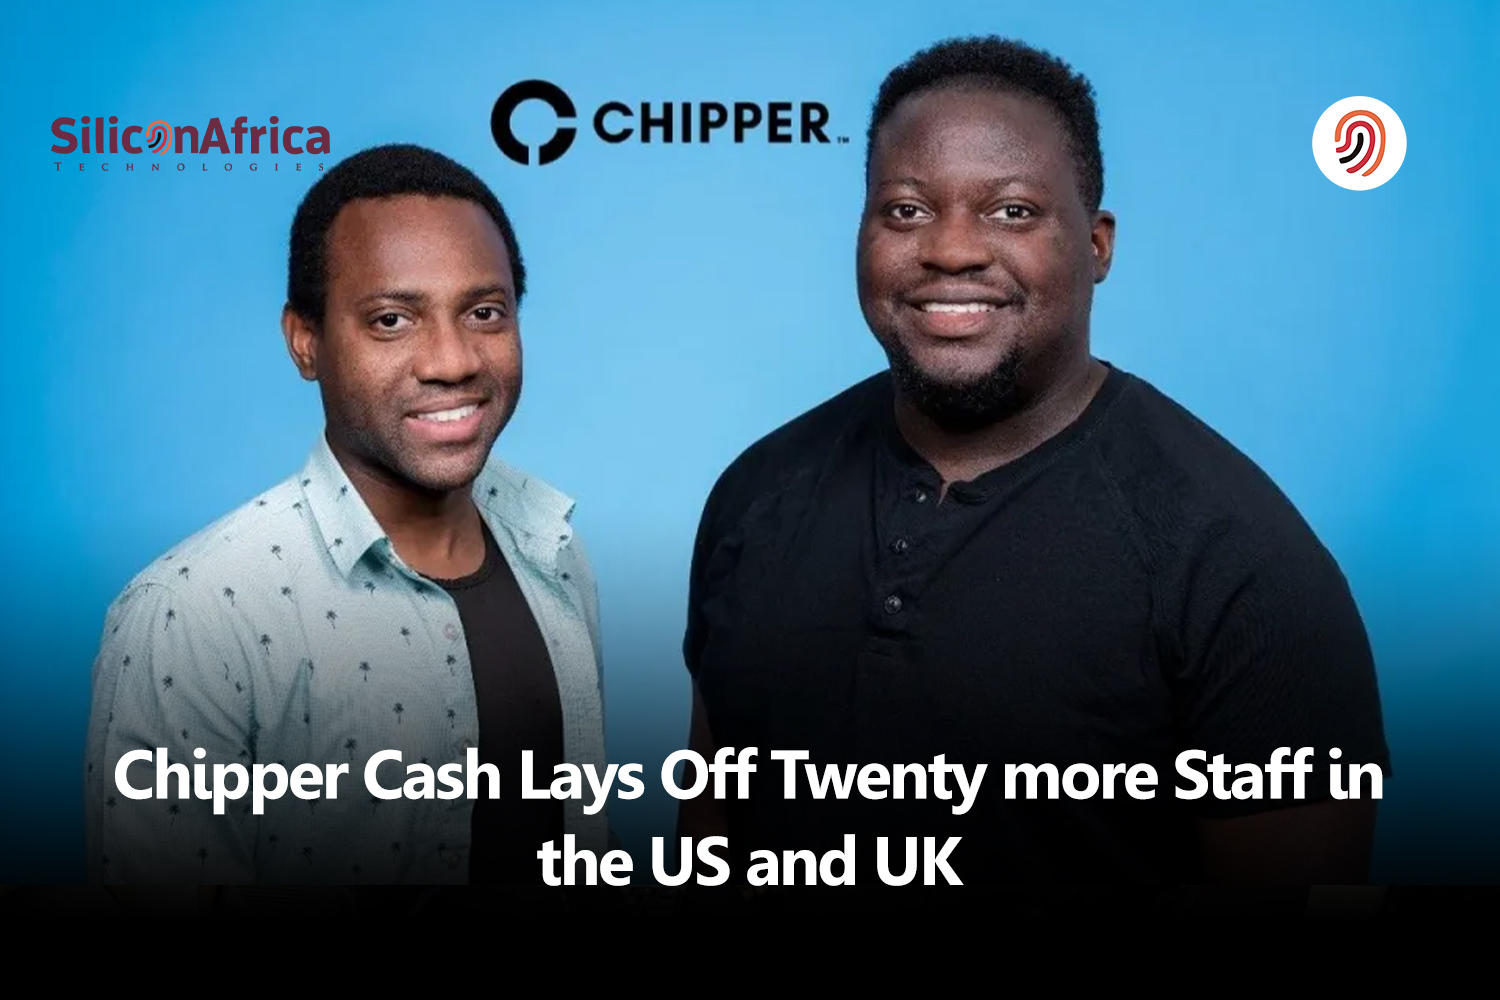 Chipper Cash